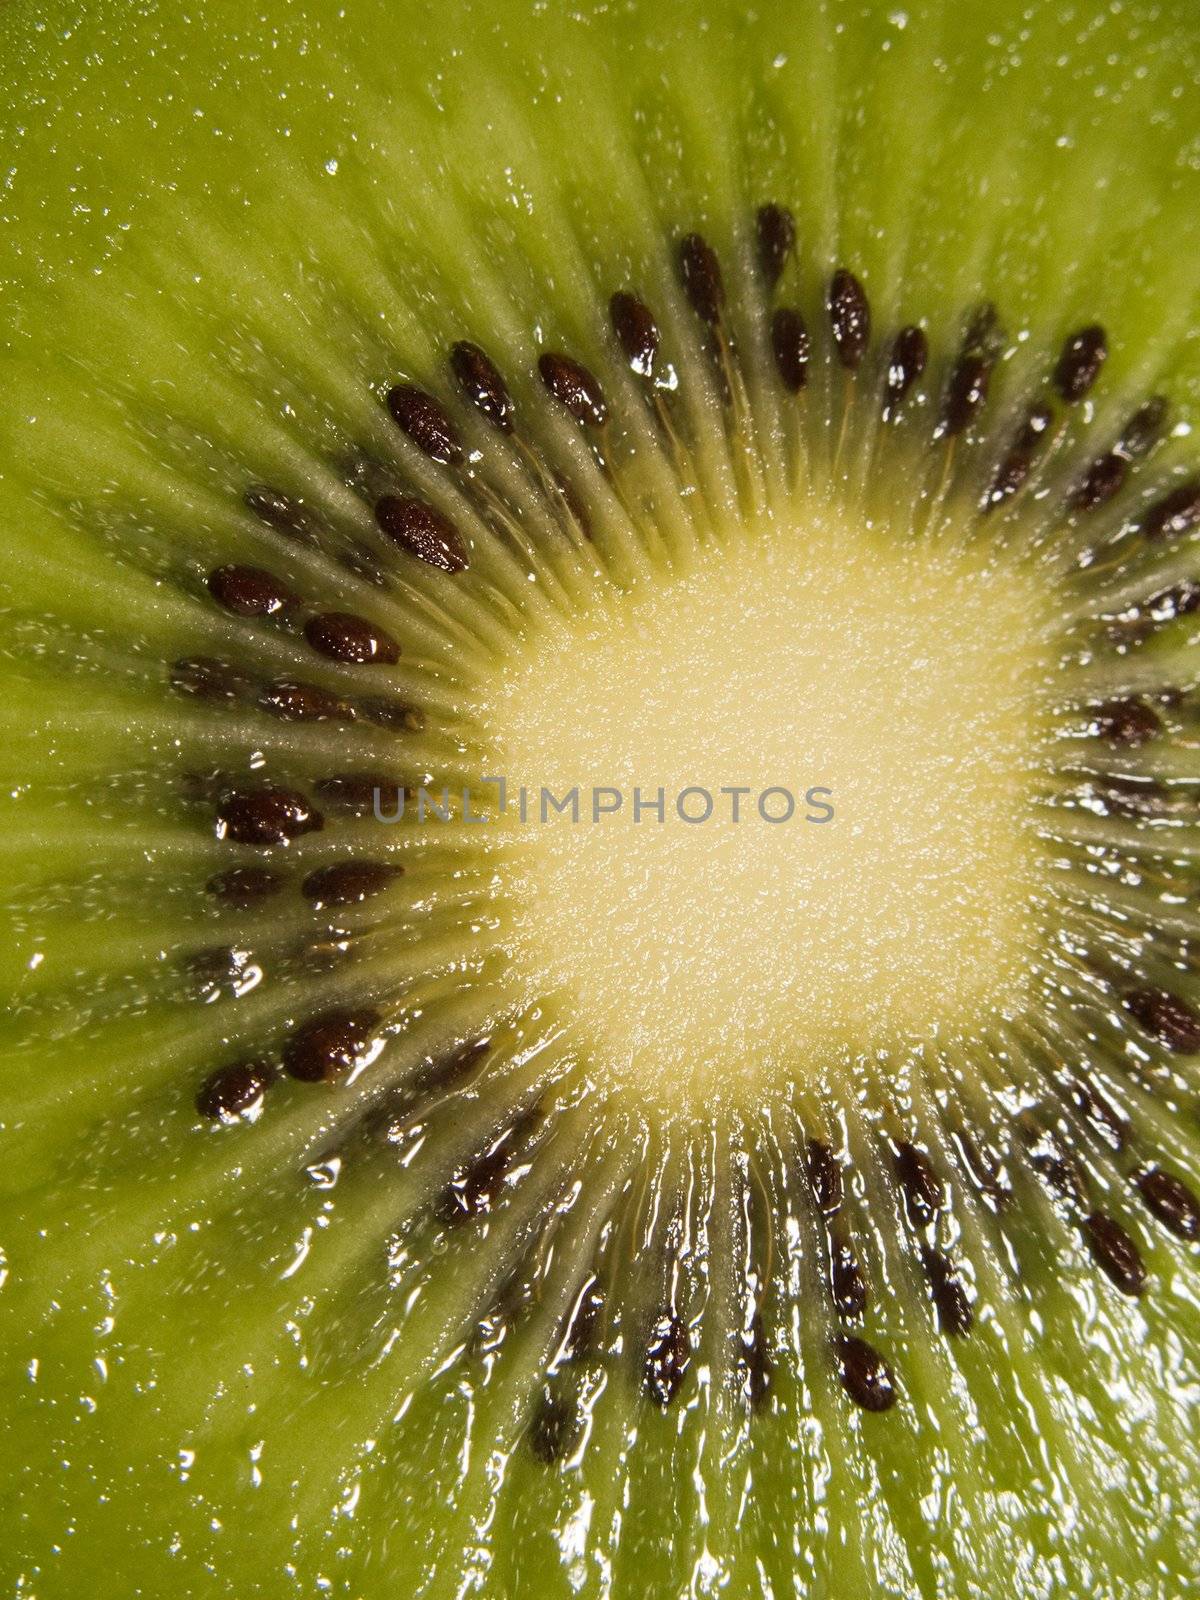 Kiwi fruit by ia_64